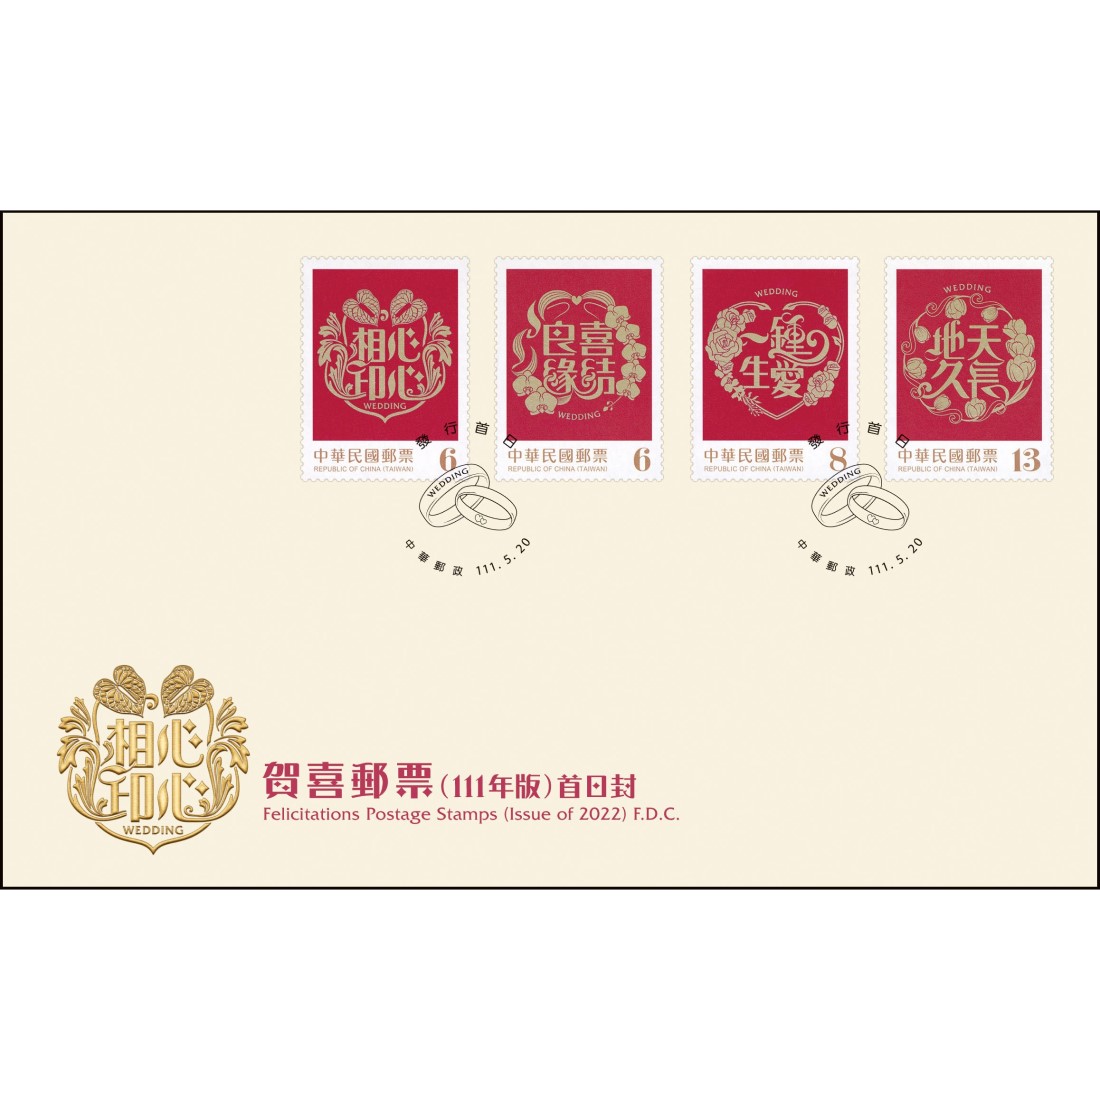 賀喜郵票(111年版) 預銷首日戳套票封